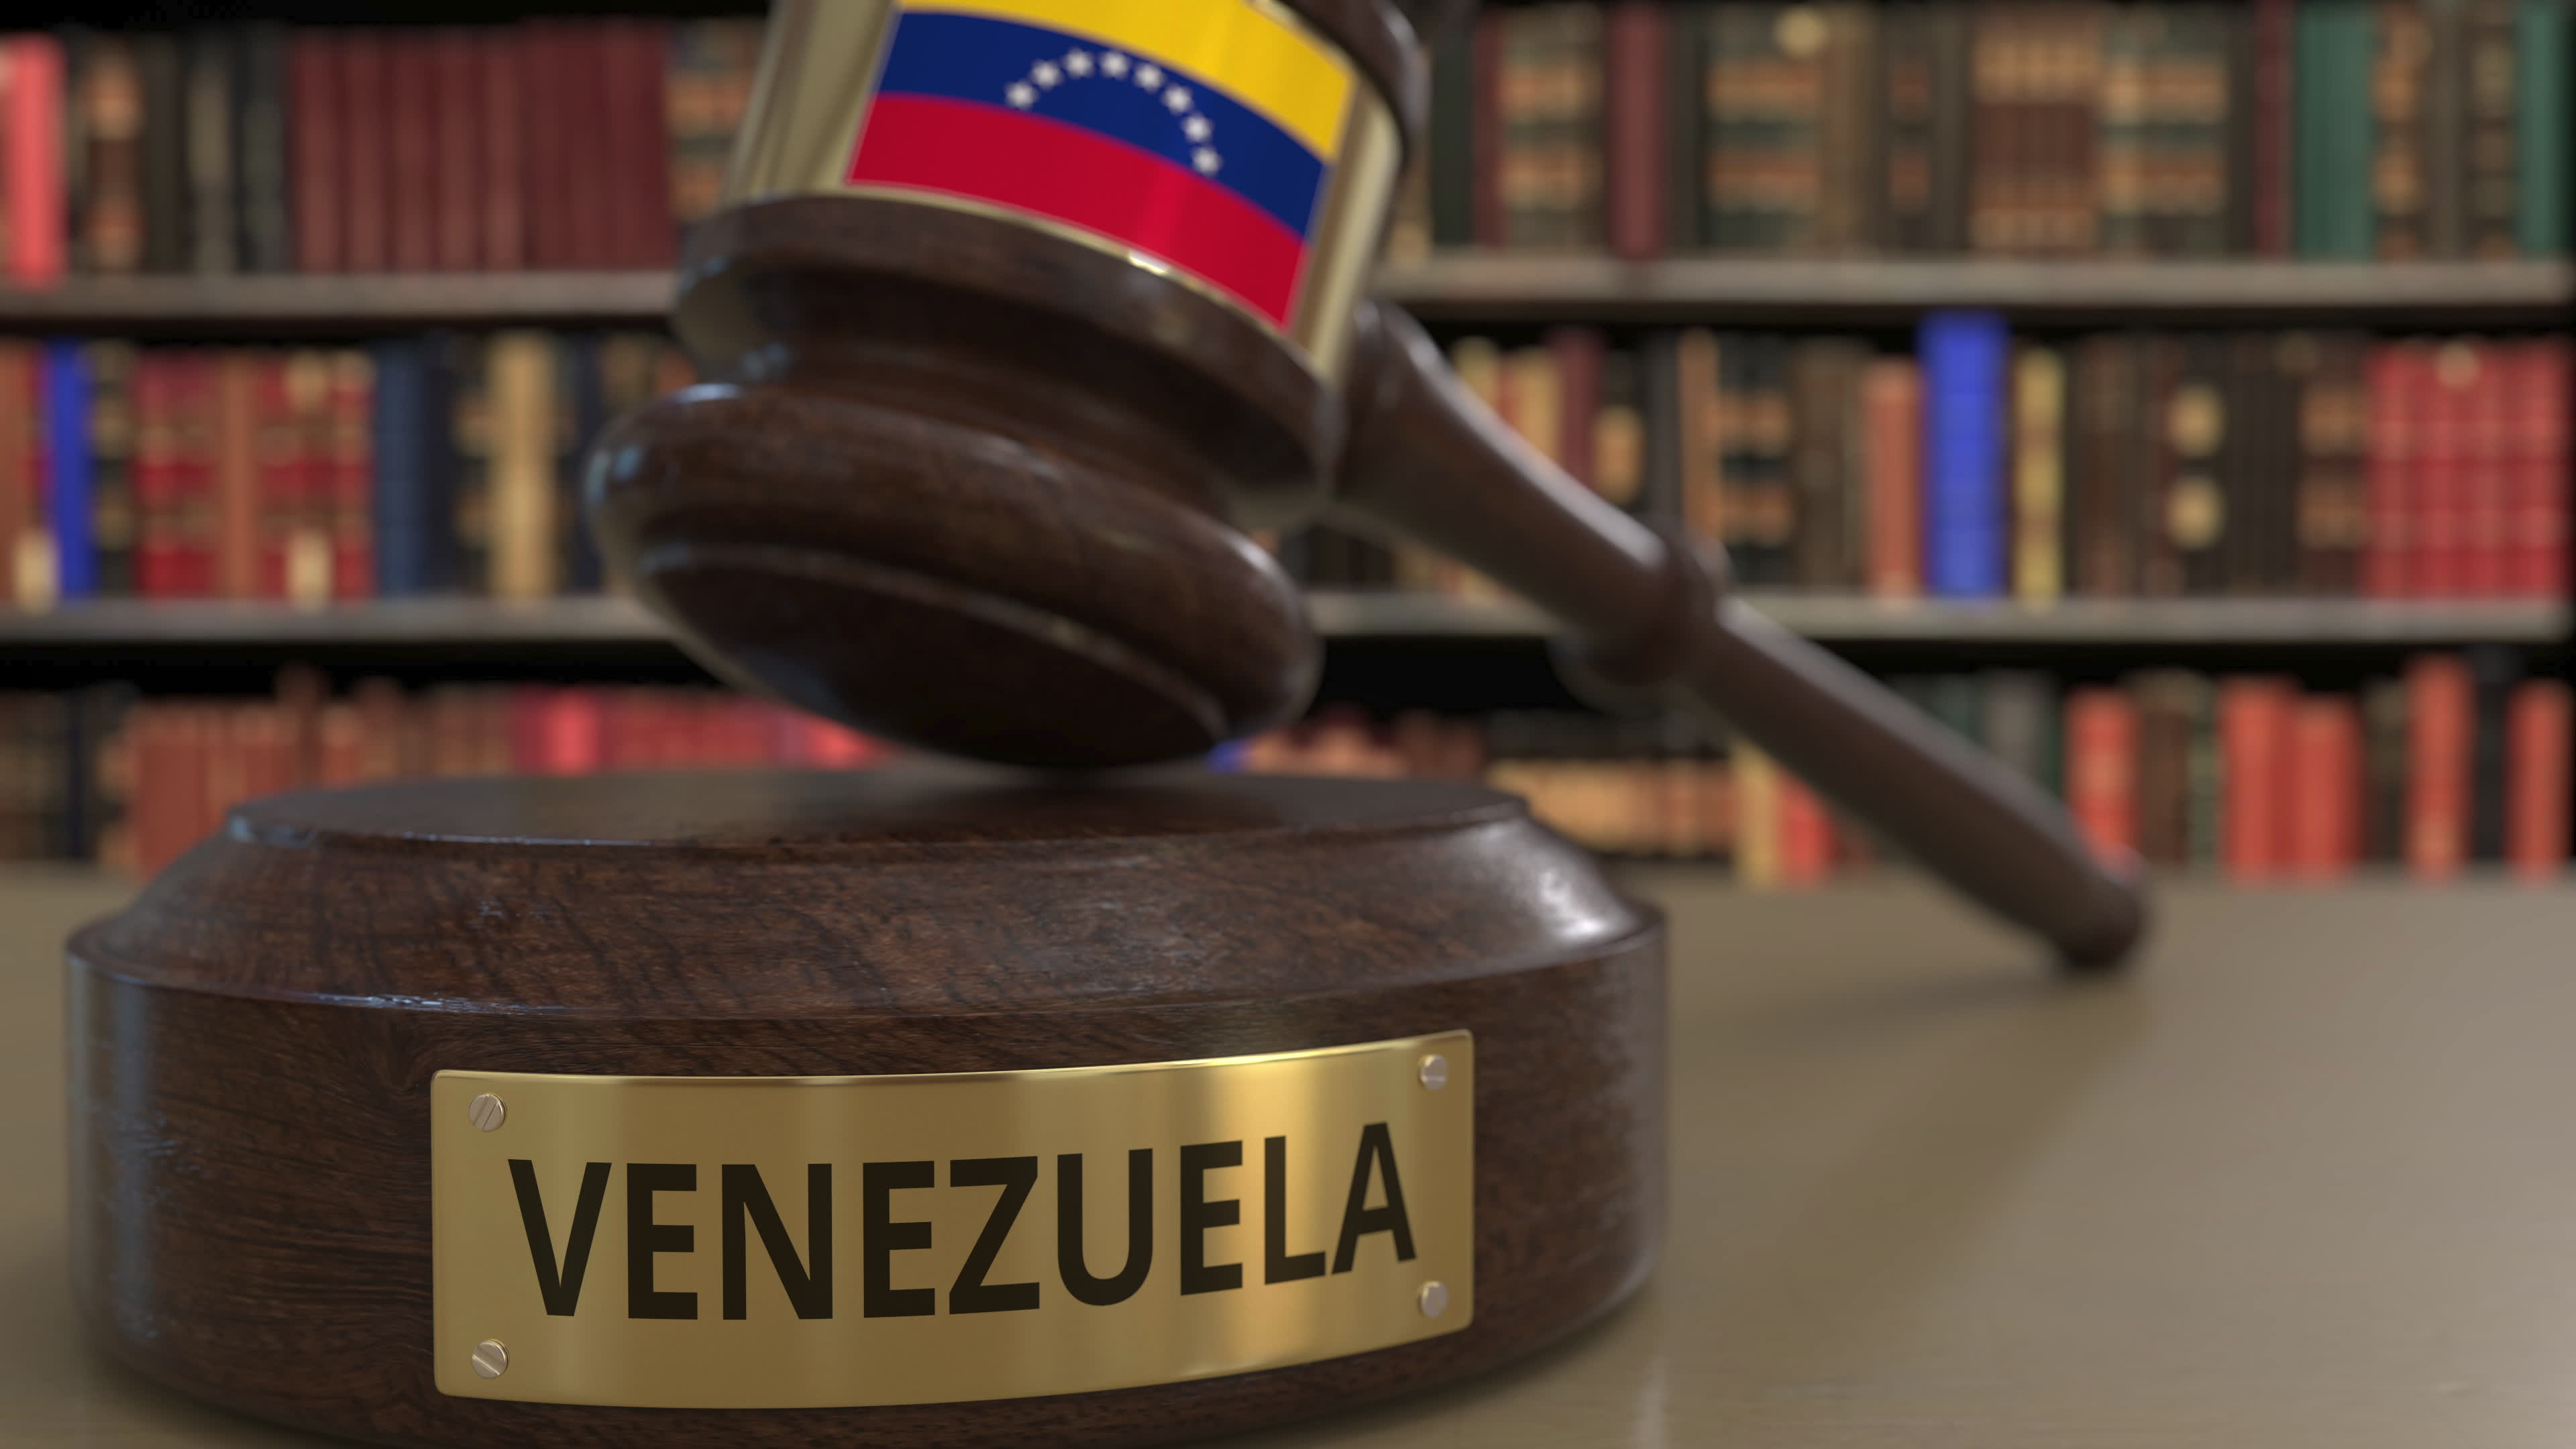     Millions de dollars et corruption: bataille judiciaire entre le Venezuela et Odebrecht

